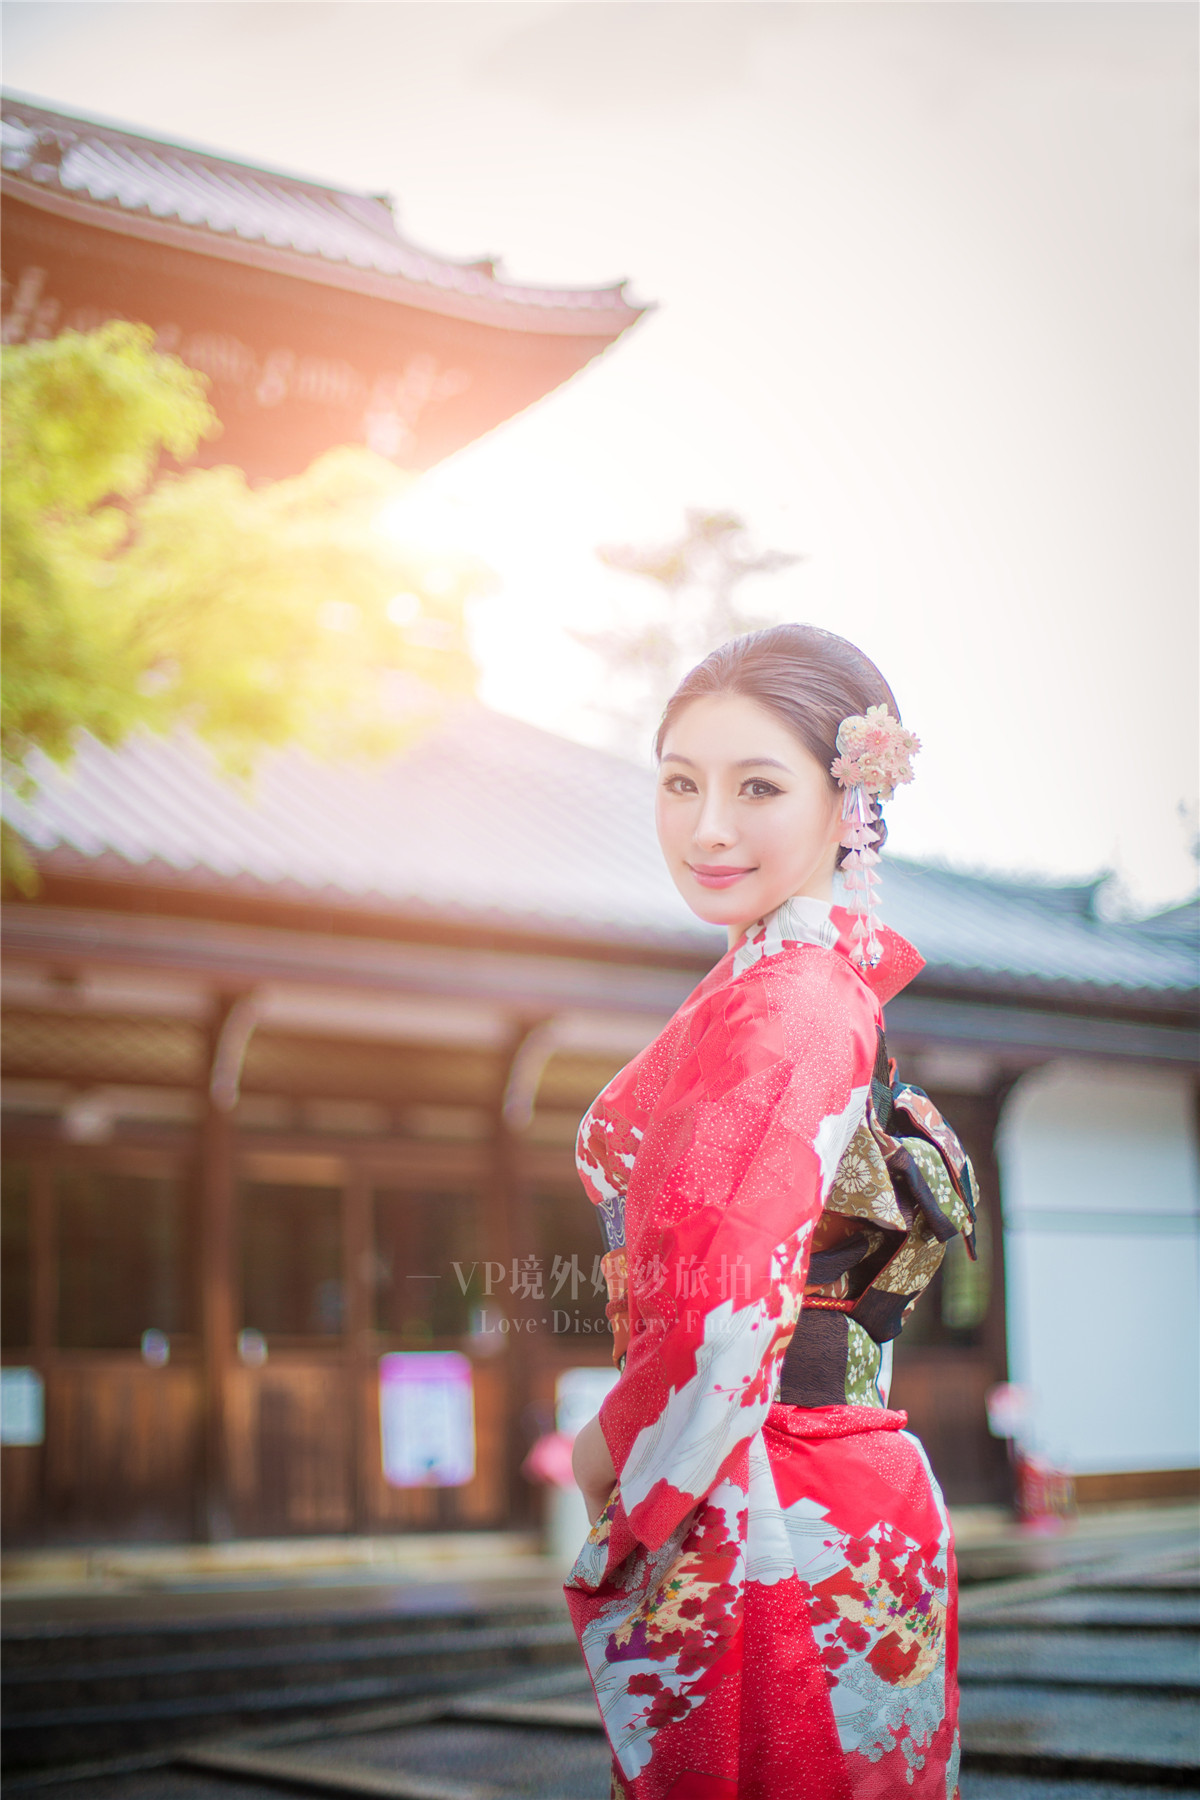 [VP境外婚纱旅拍]日本樱花婚纱摄影